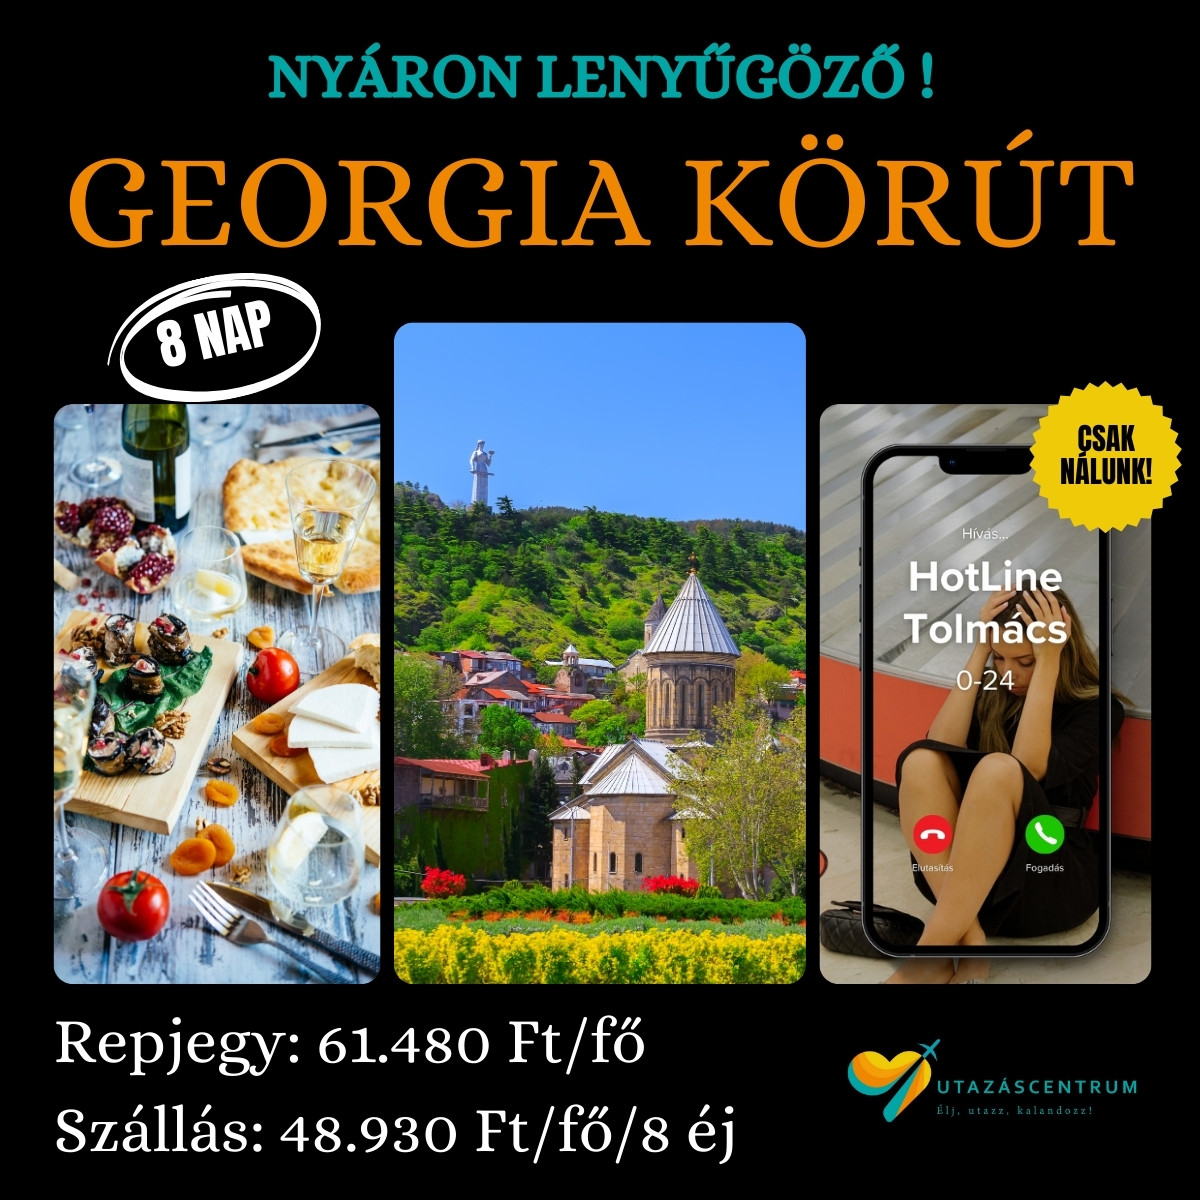 Grúzia Georgia utazás nyaralás utazási tipp látnivalók szállás repjegy utazáscentrum blog